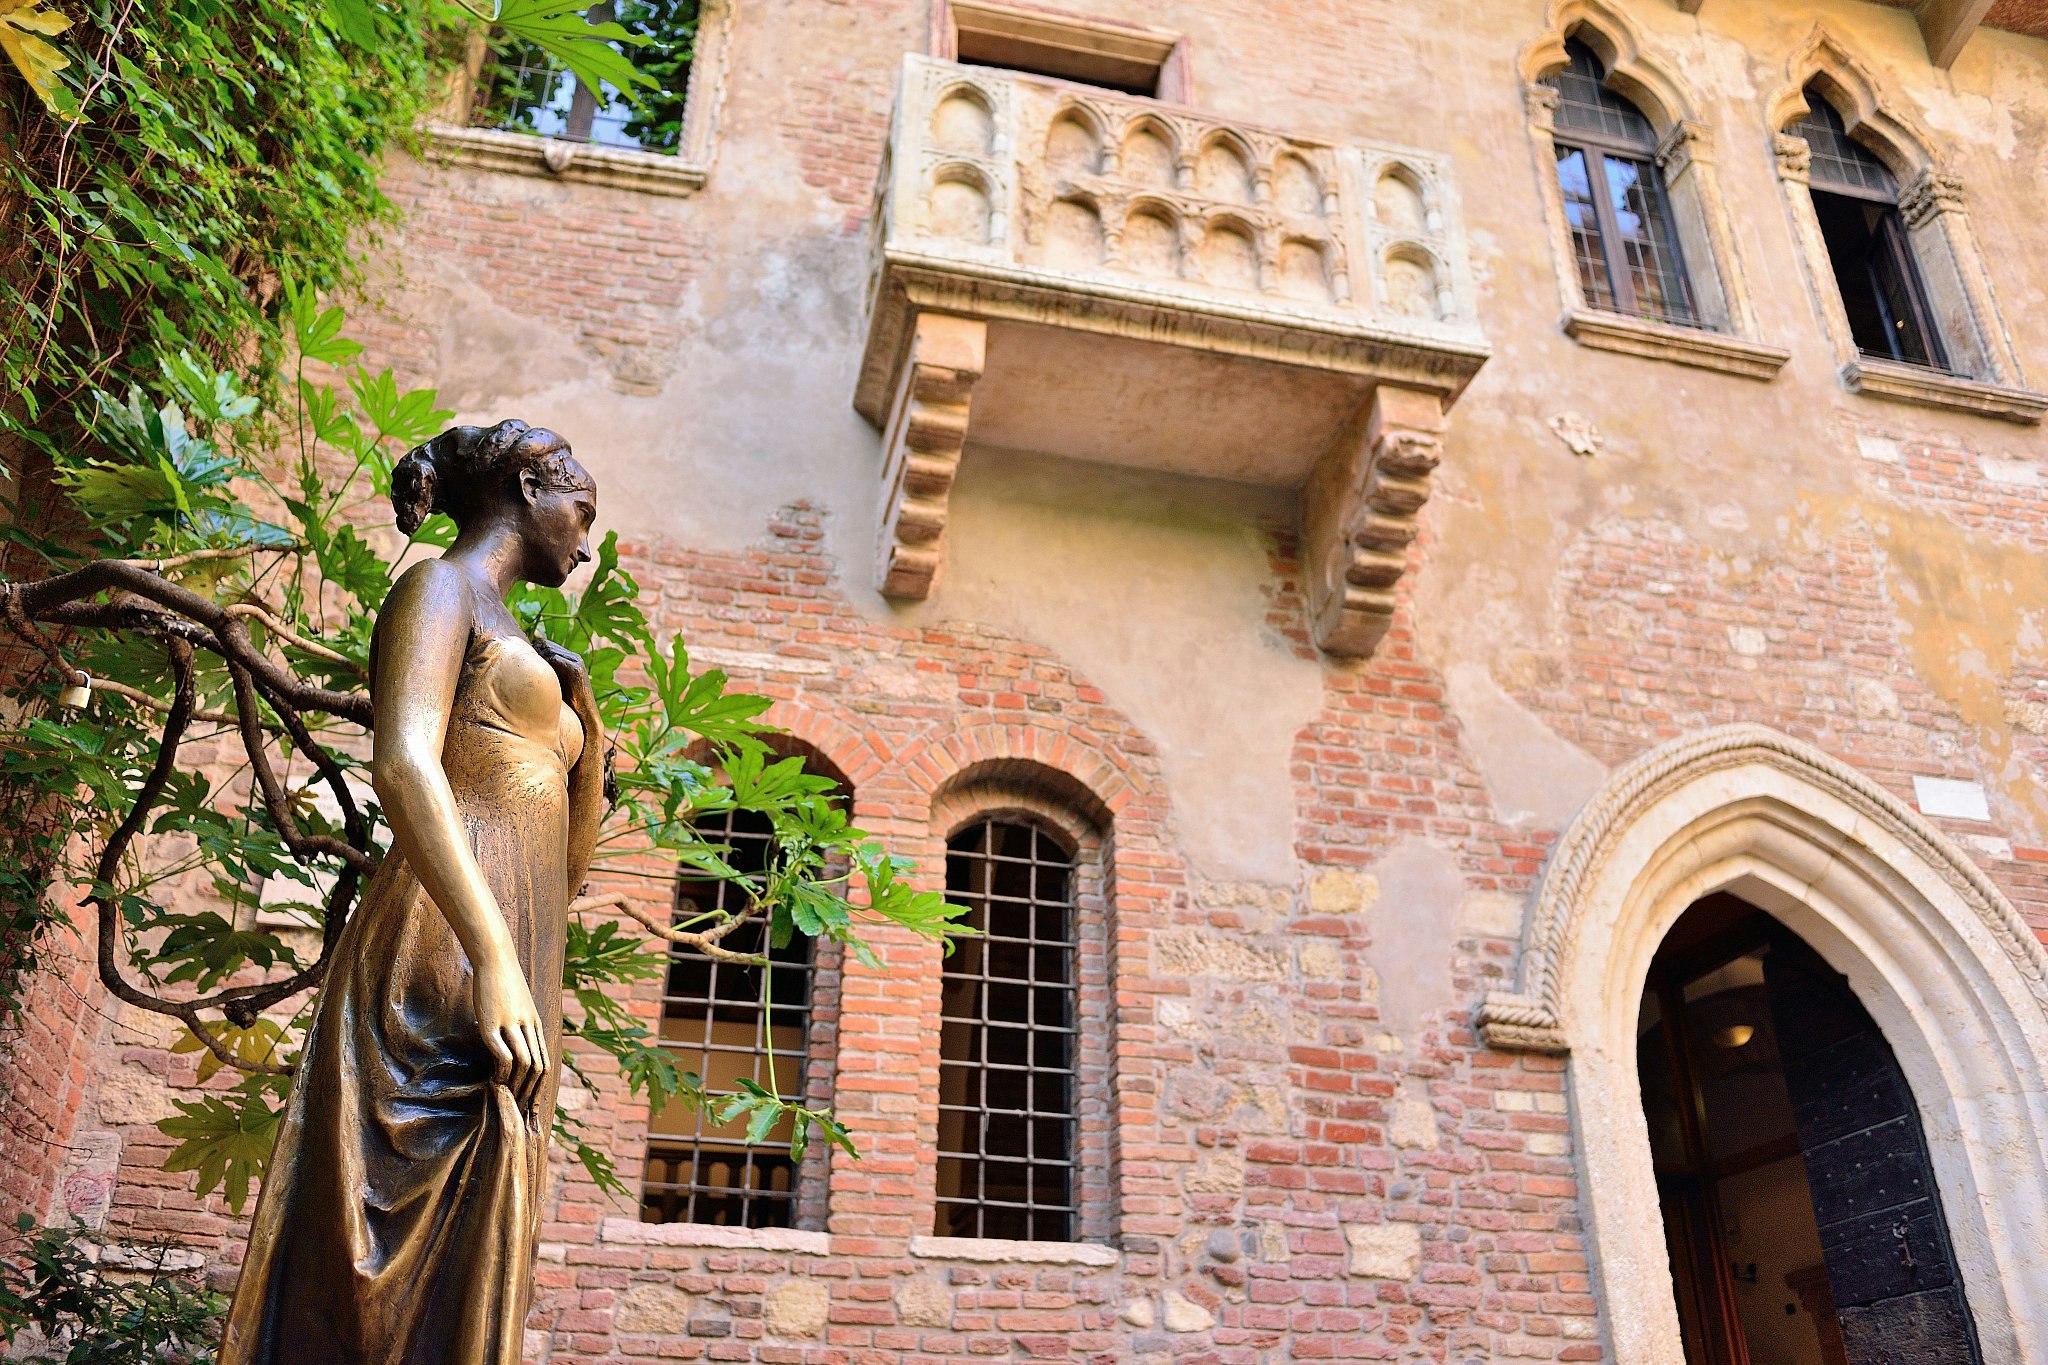 Patio and Juliet's balcony at Casa di Giulietta, Verona, Italy.